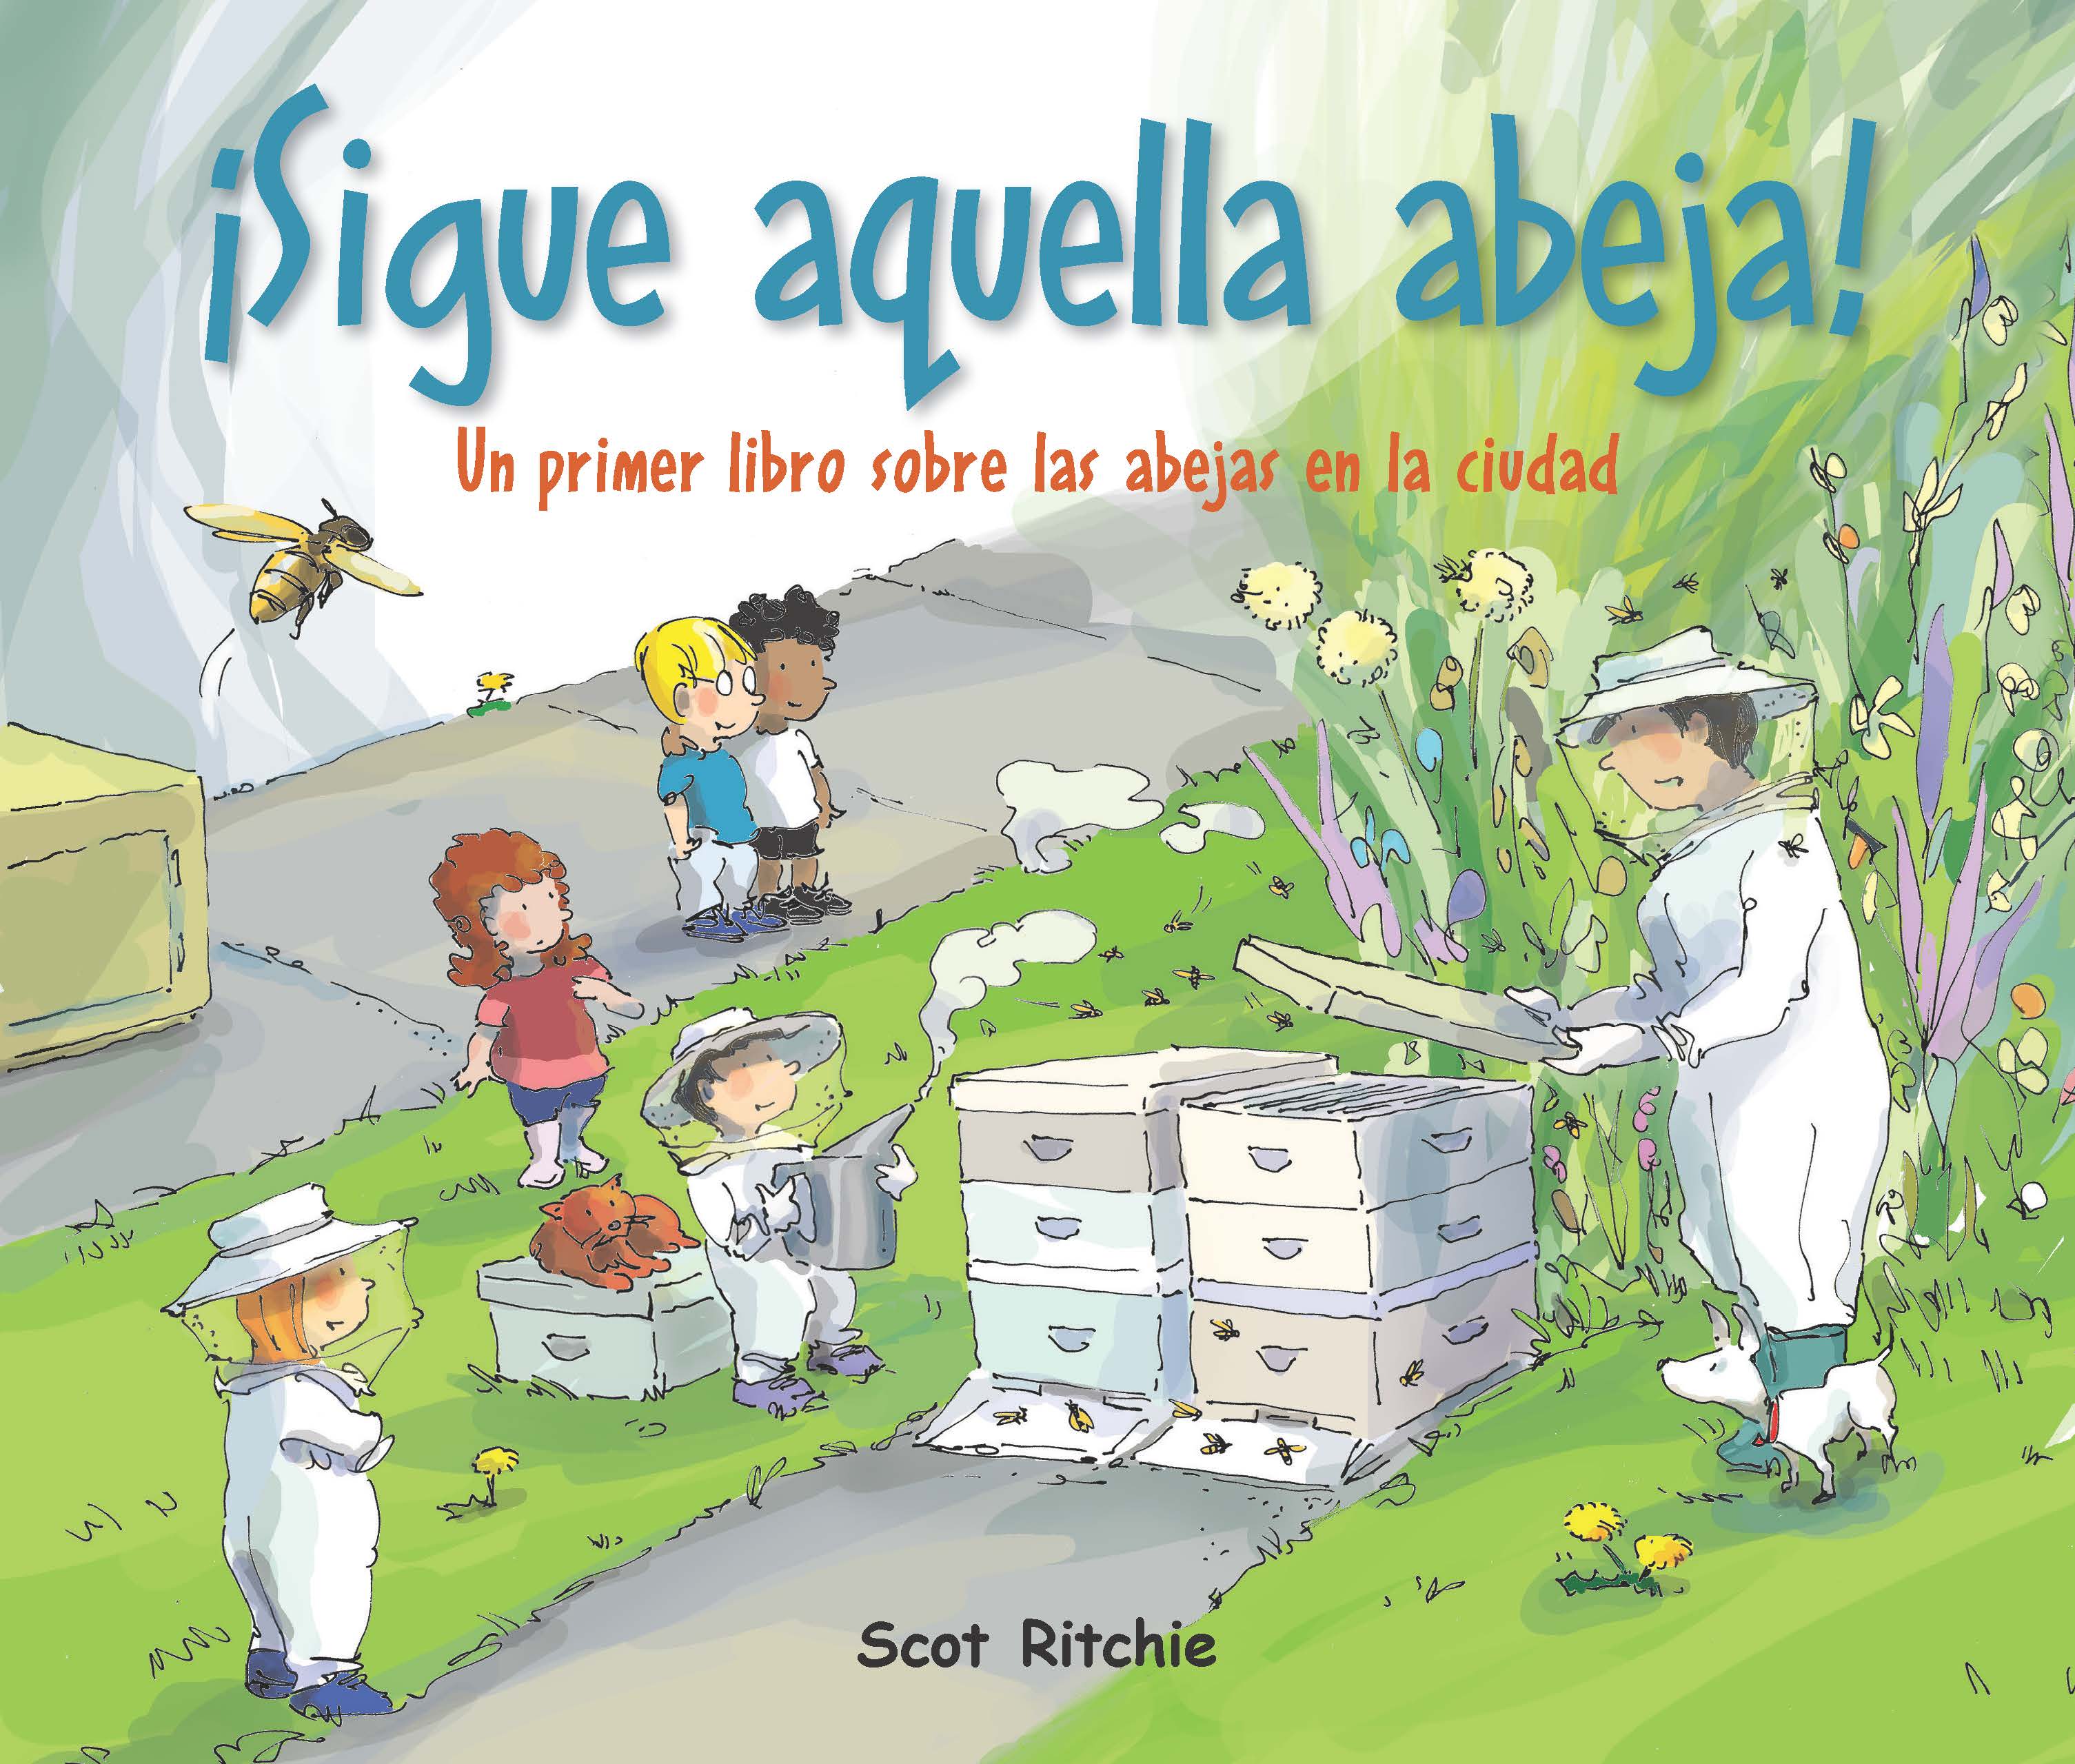 aquella abeja! Un primer libro las abejas en la ciudad